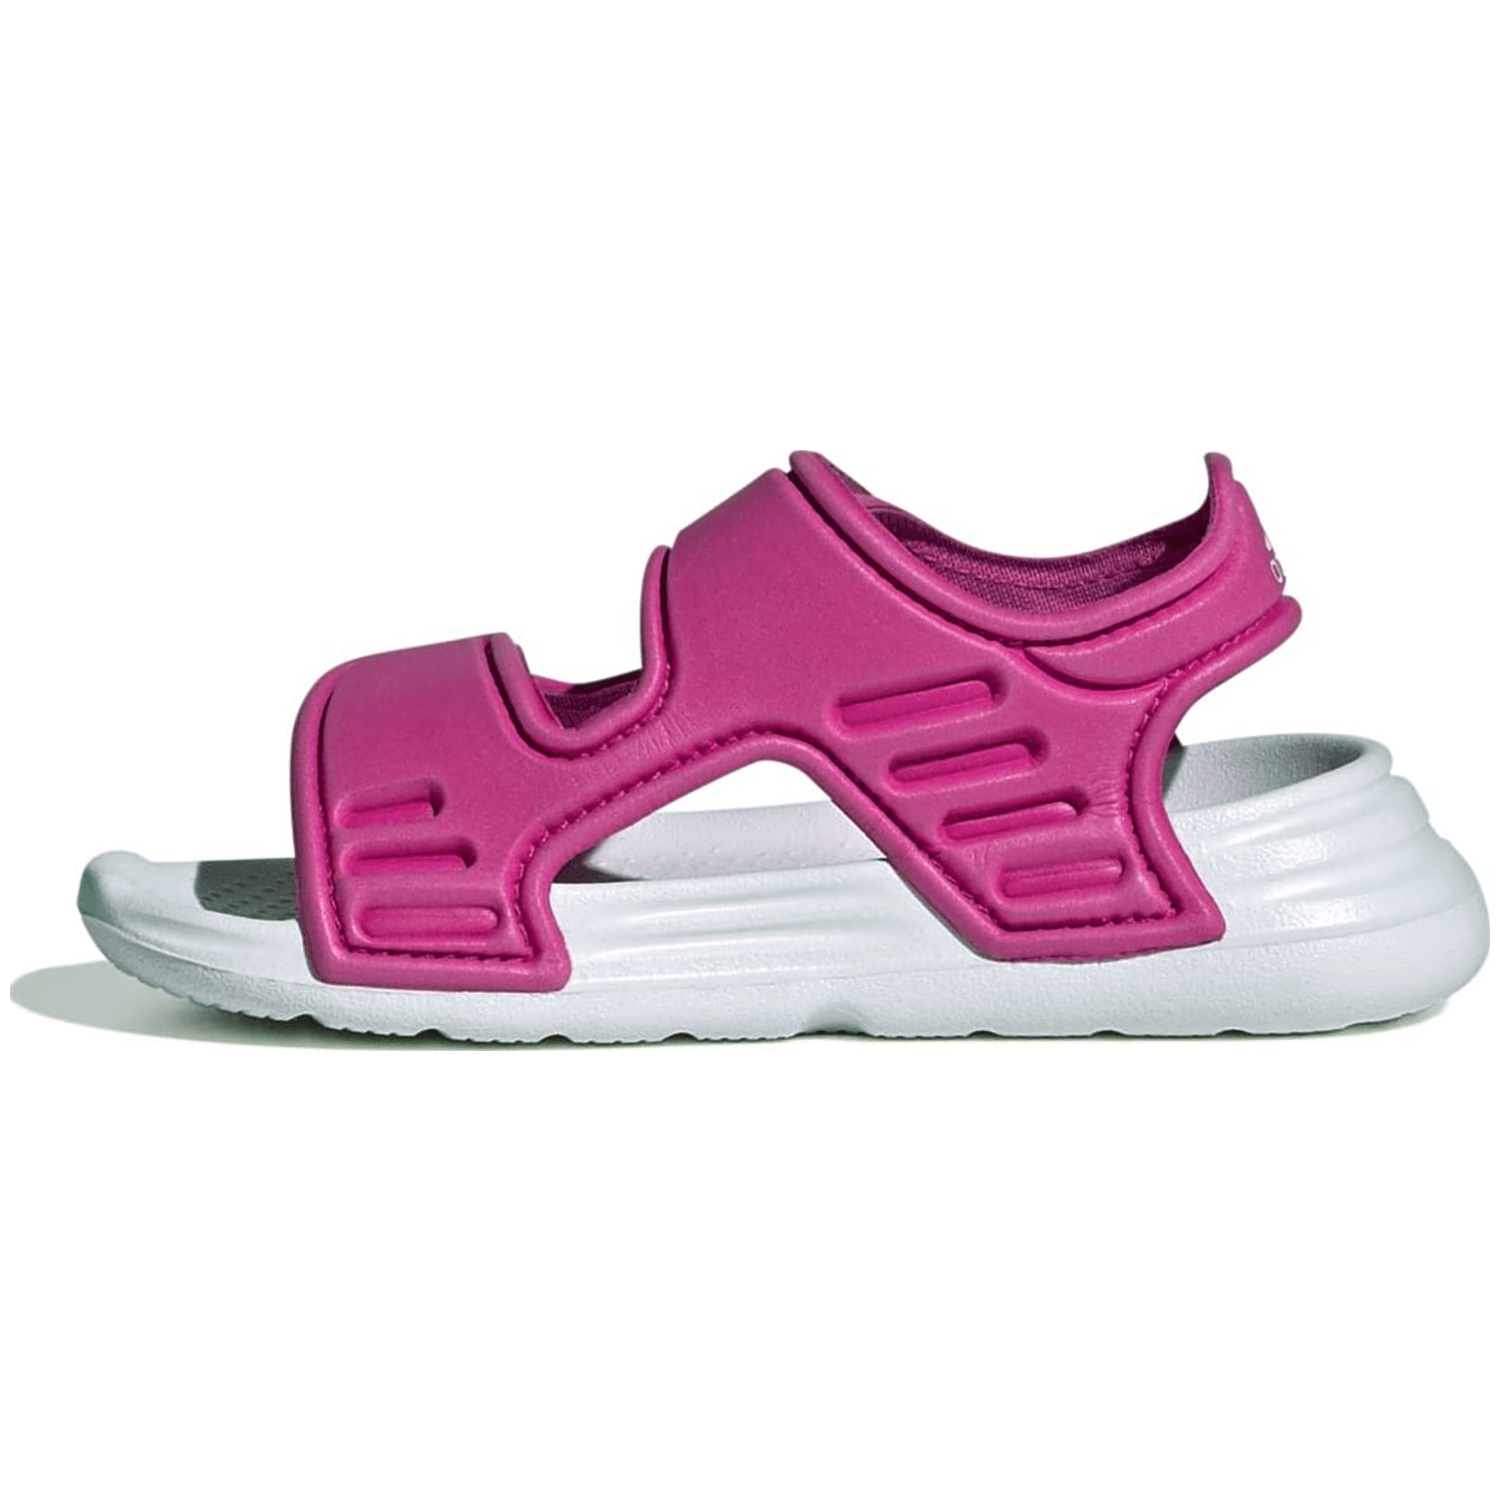 Adidas Altaswim Sandale Kinder